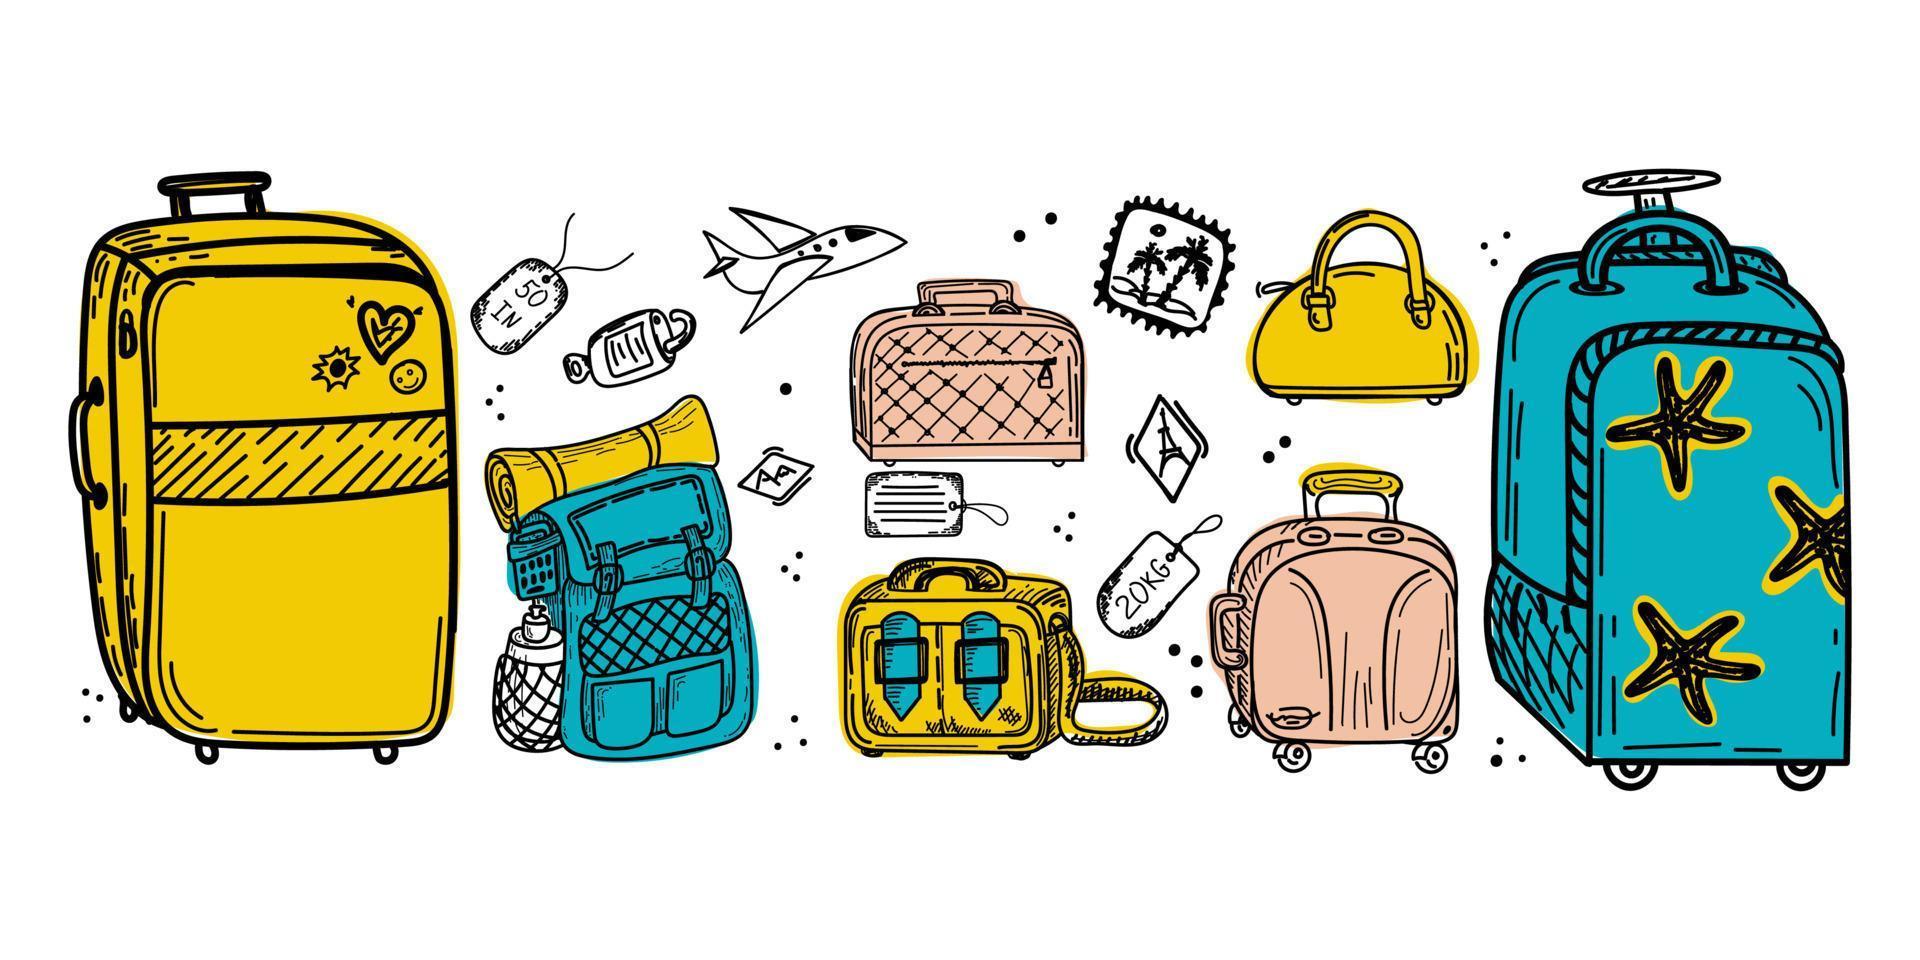 uppsättning av olika typer av bagage, handritade doodle i skiss stil. vektor illustration. stor och liten resväska, liten väska, handbagage, valise, tags. Tillbehör. flygplan. skiss